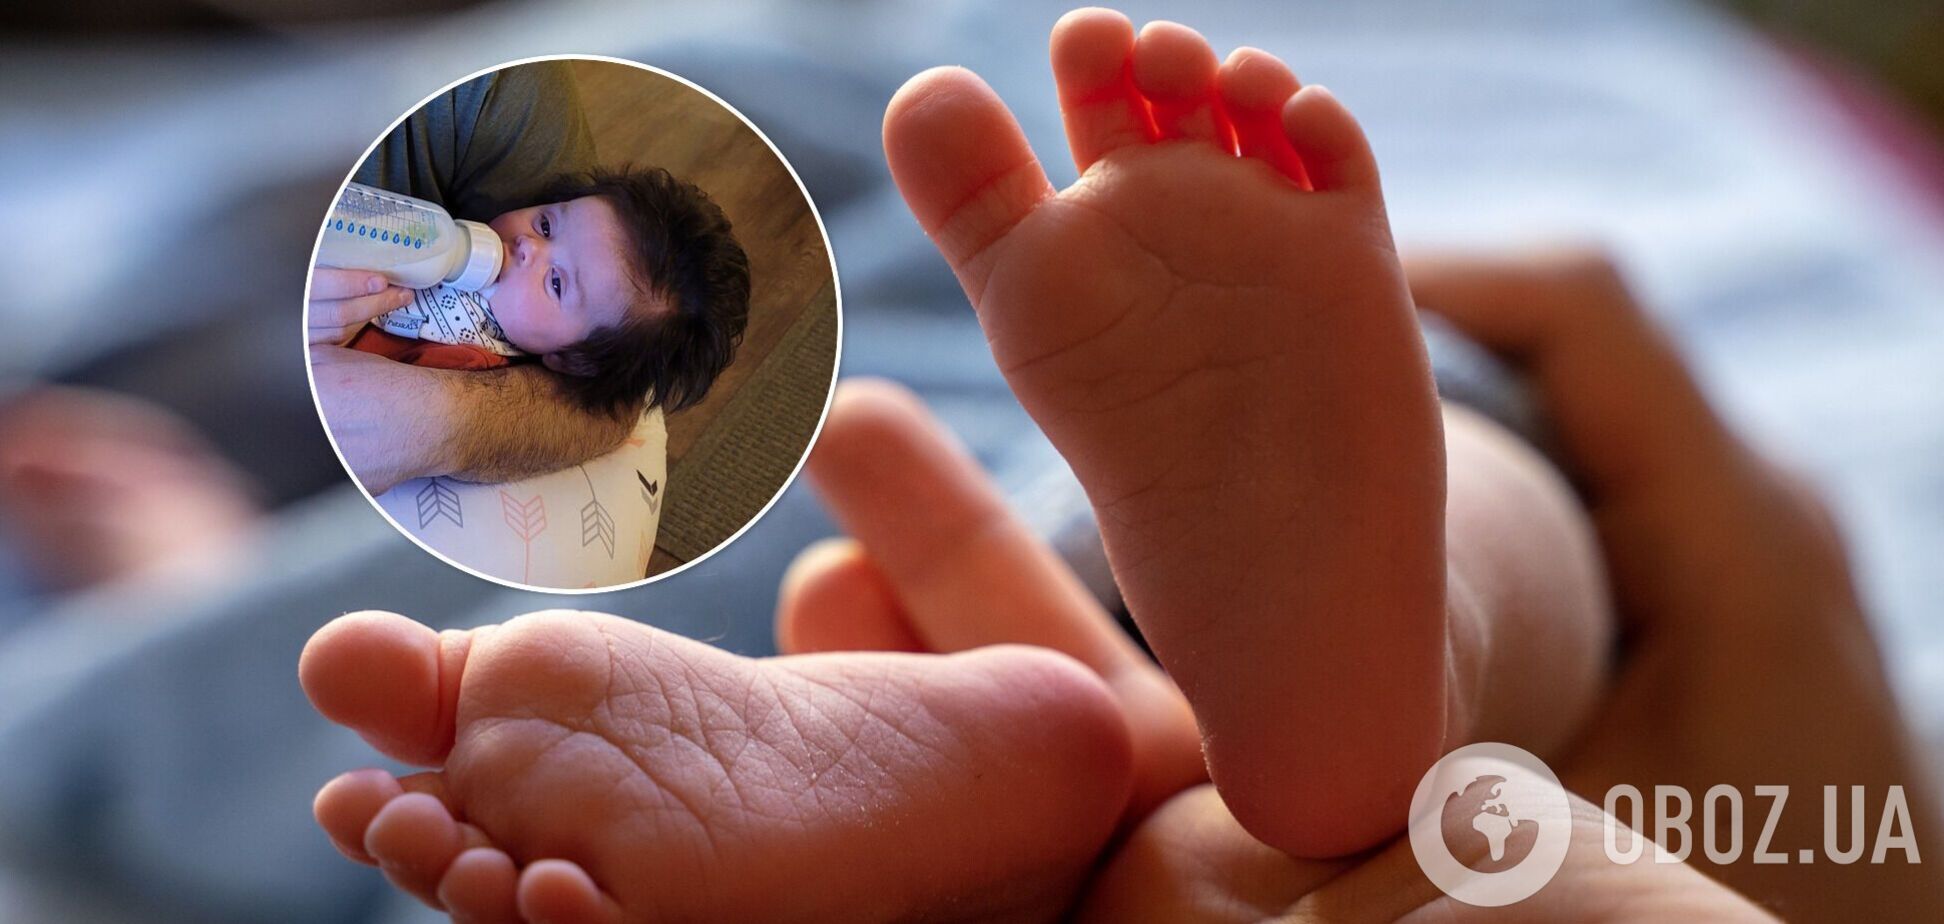 Фото немовляти з густим волоссям стало вірусним у мережі